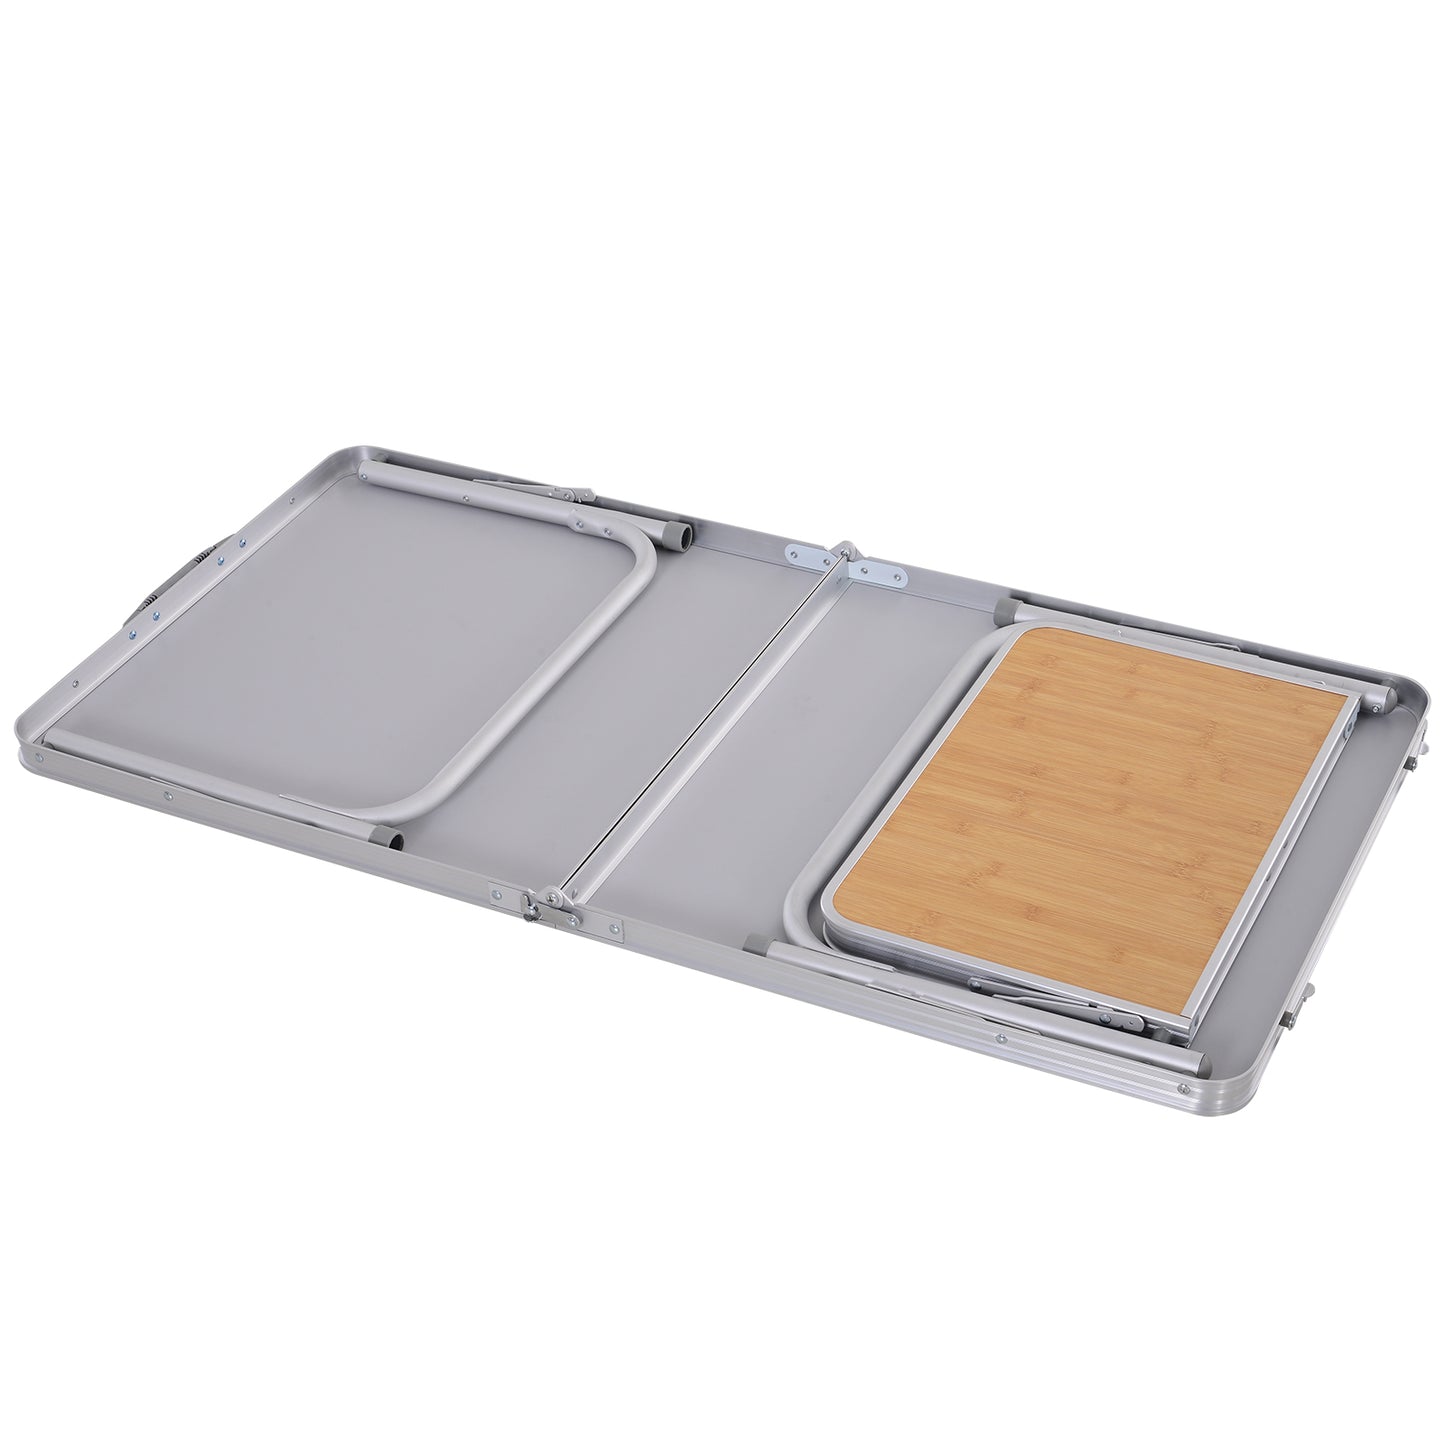 Outsunny Aluminium MDF-Top 4ft Folding Portable Outdoor Table Silver